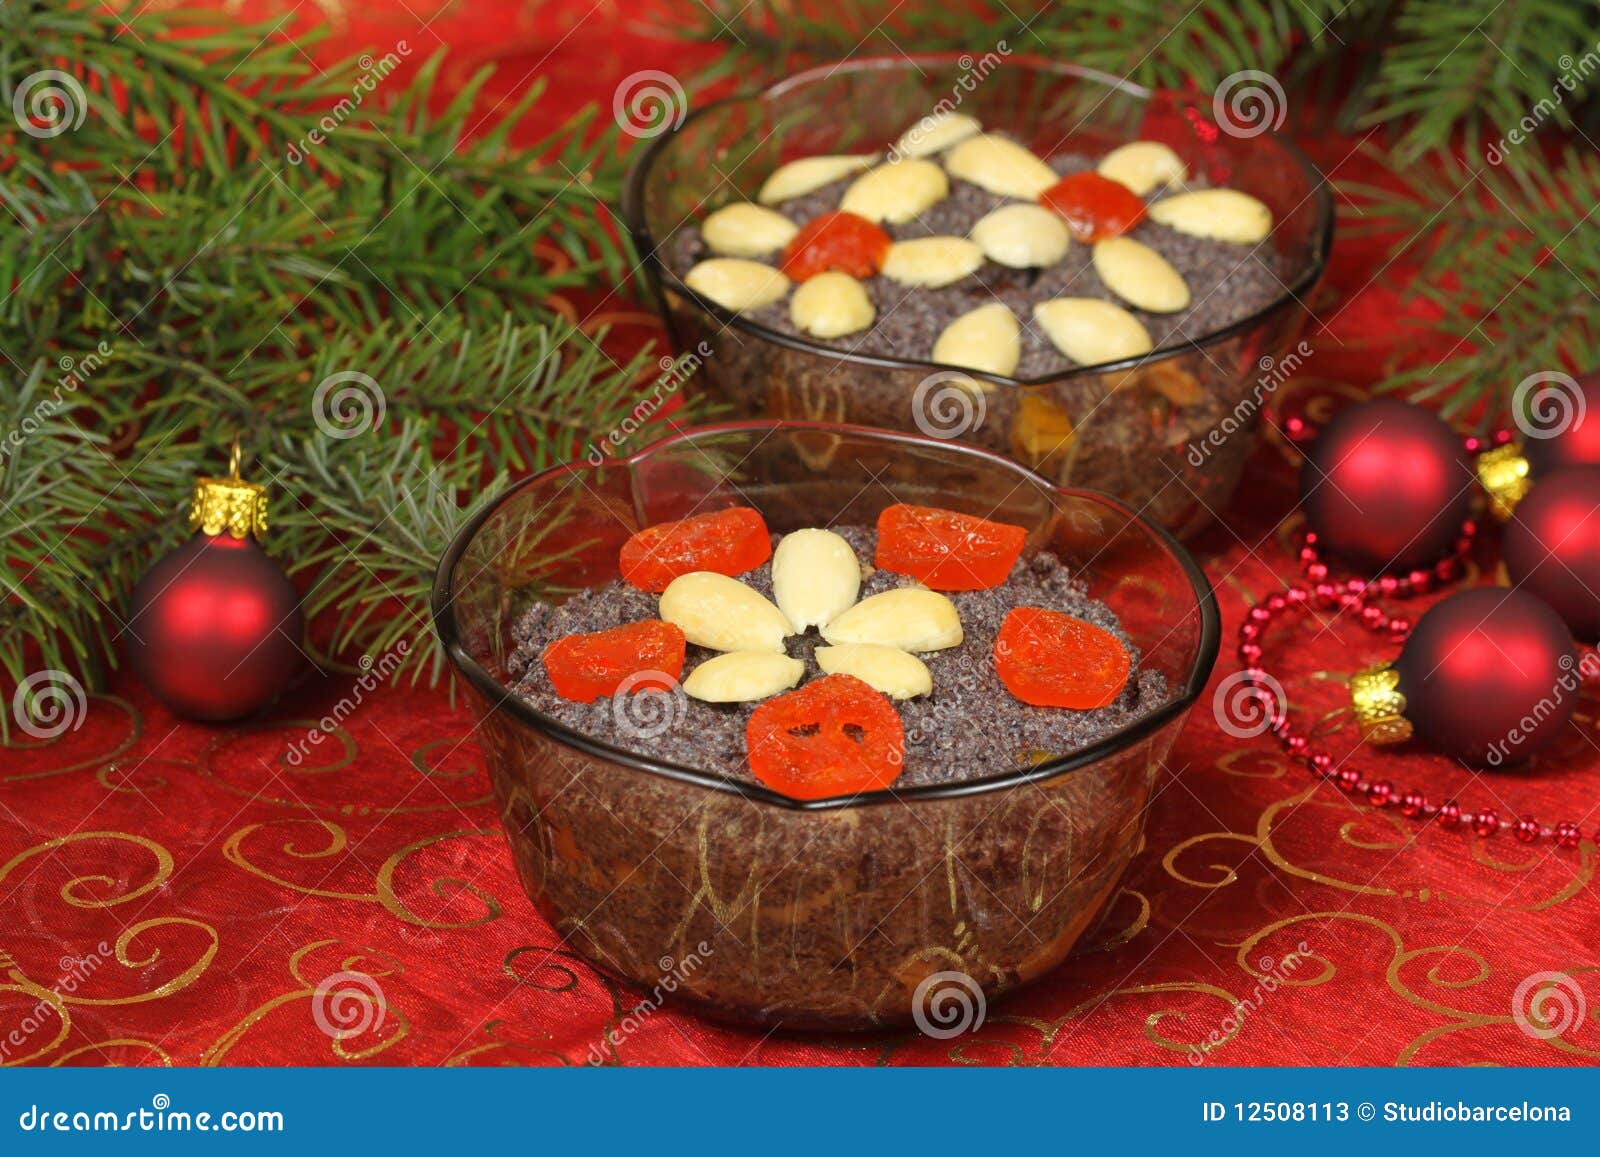 Polish Christmas Dessert Stock Image Image Of Makowki 12508113